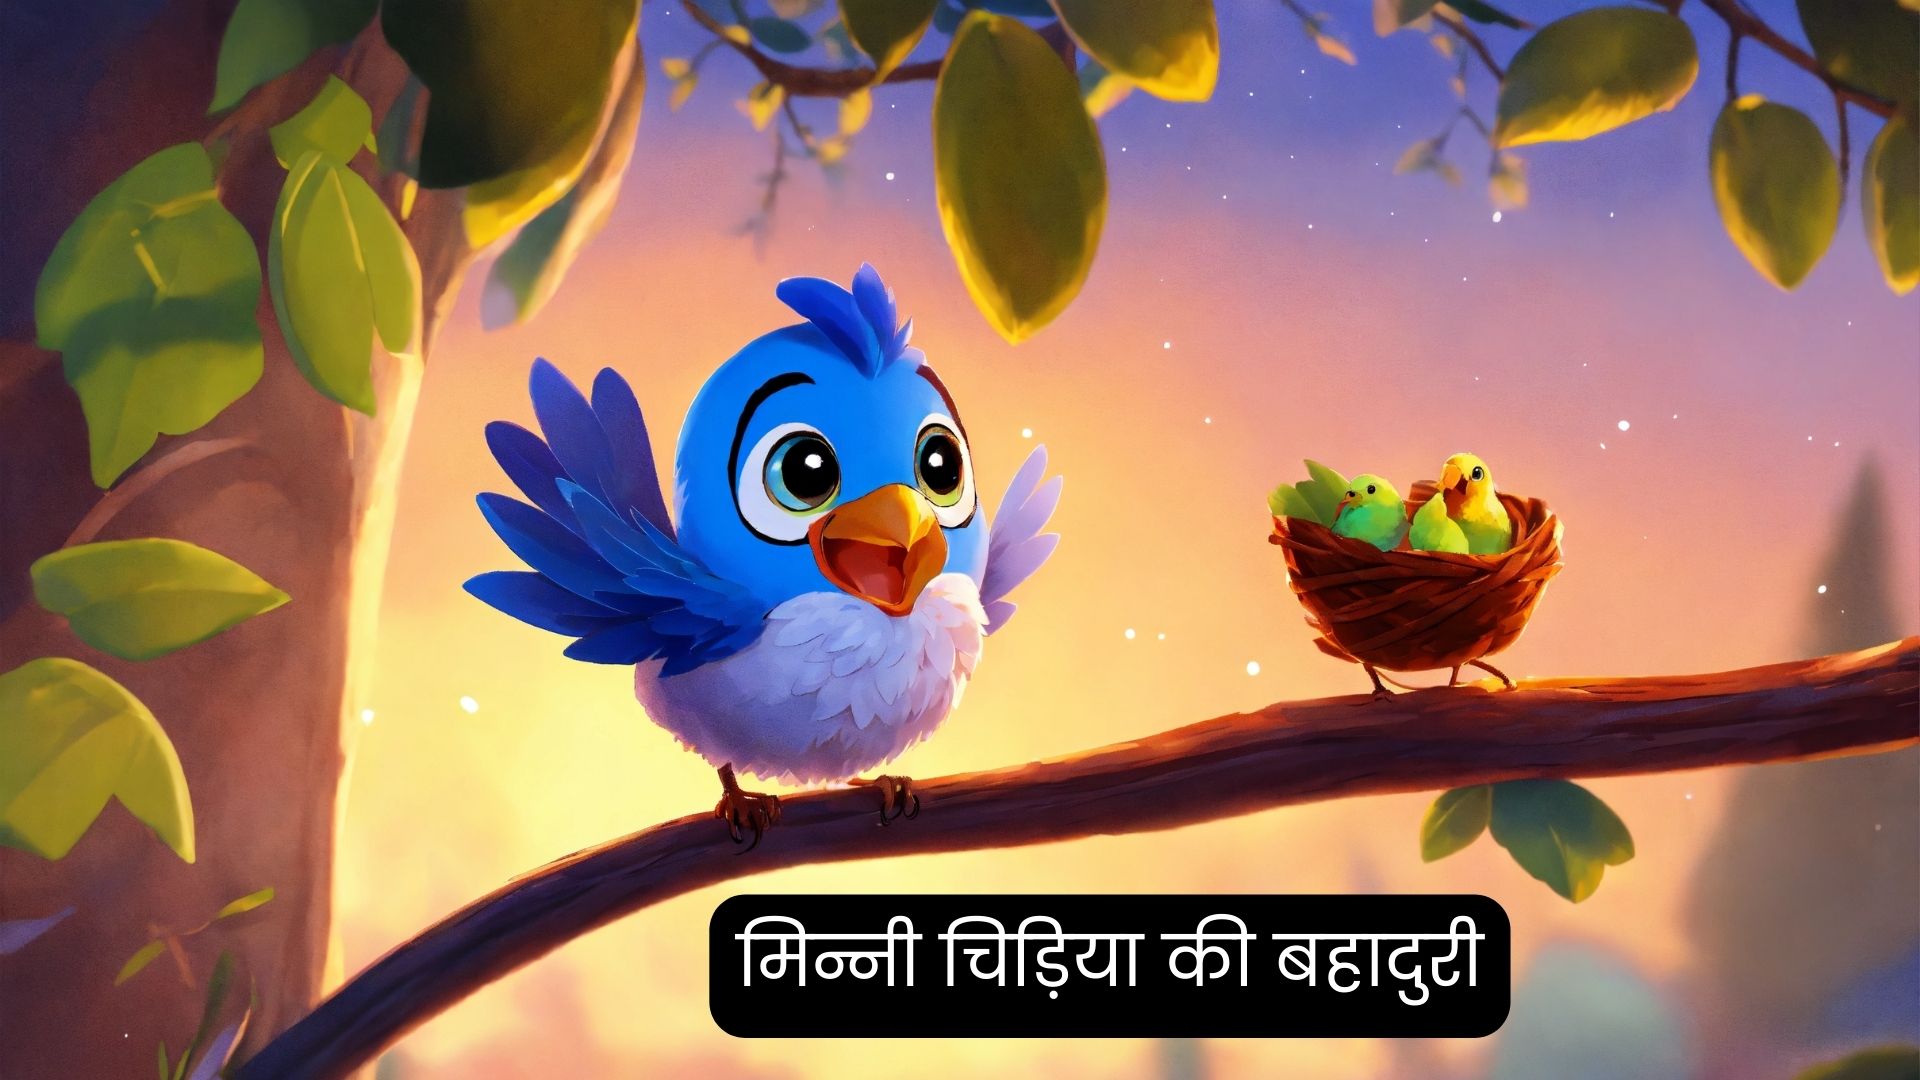 मिन्नी चिड़िया की बहादुरी | Hindi Story For Kids